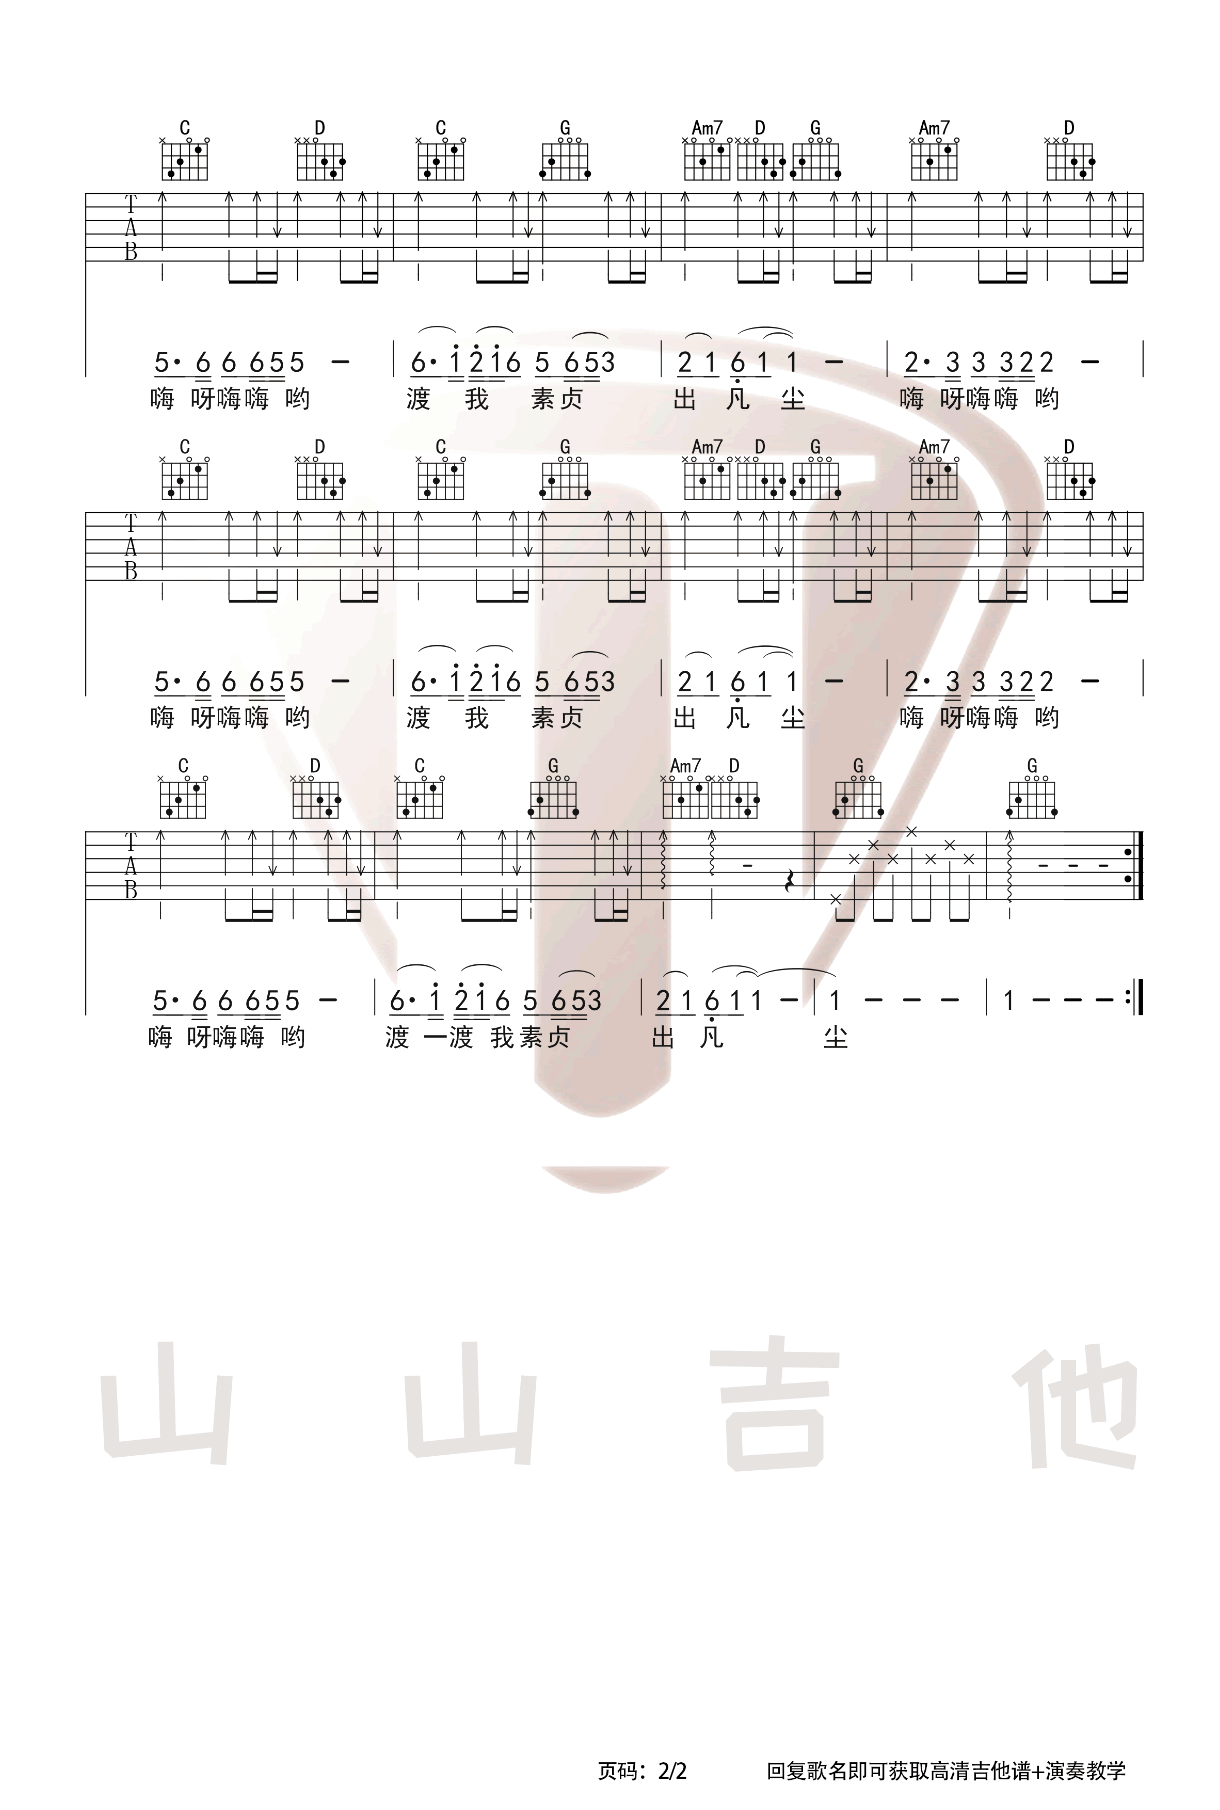 千年等一回（台湾电视剧《新白娘子传奇》片头曲）简谱_千年等一回（台湾电视剧《新白娘子传奇》片头曲）吉他谱－精彩曲谱